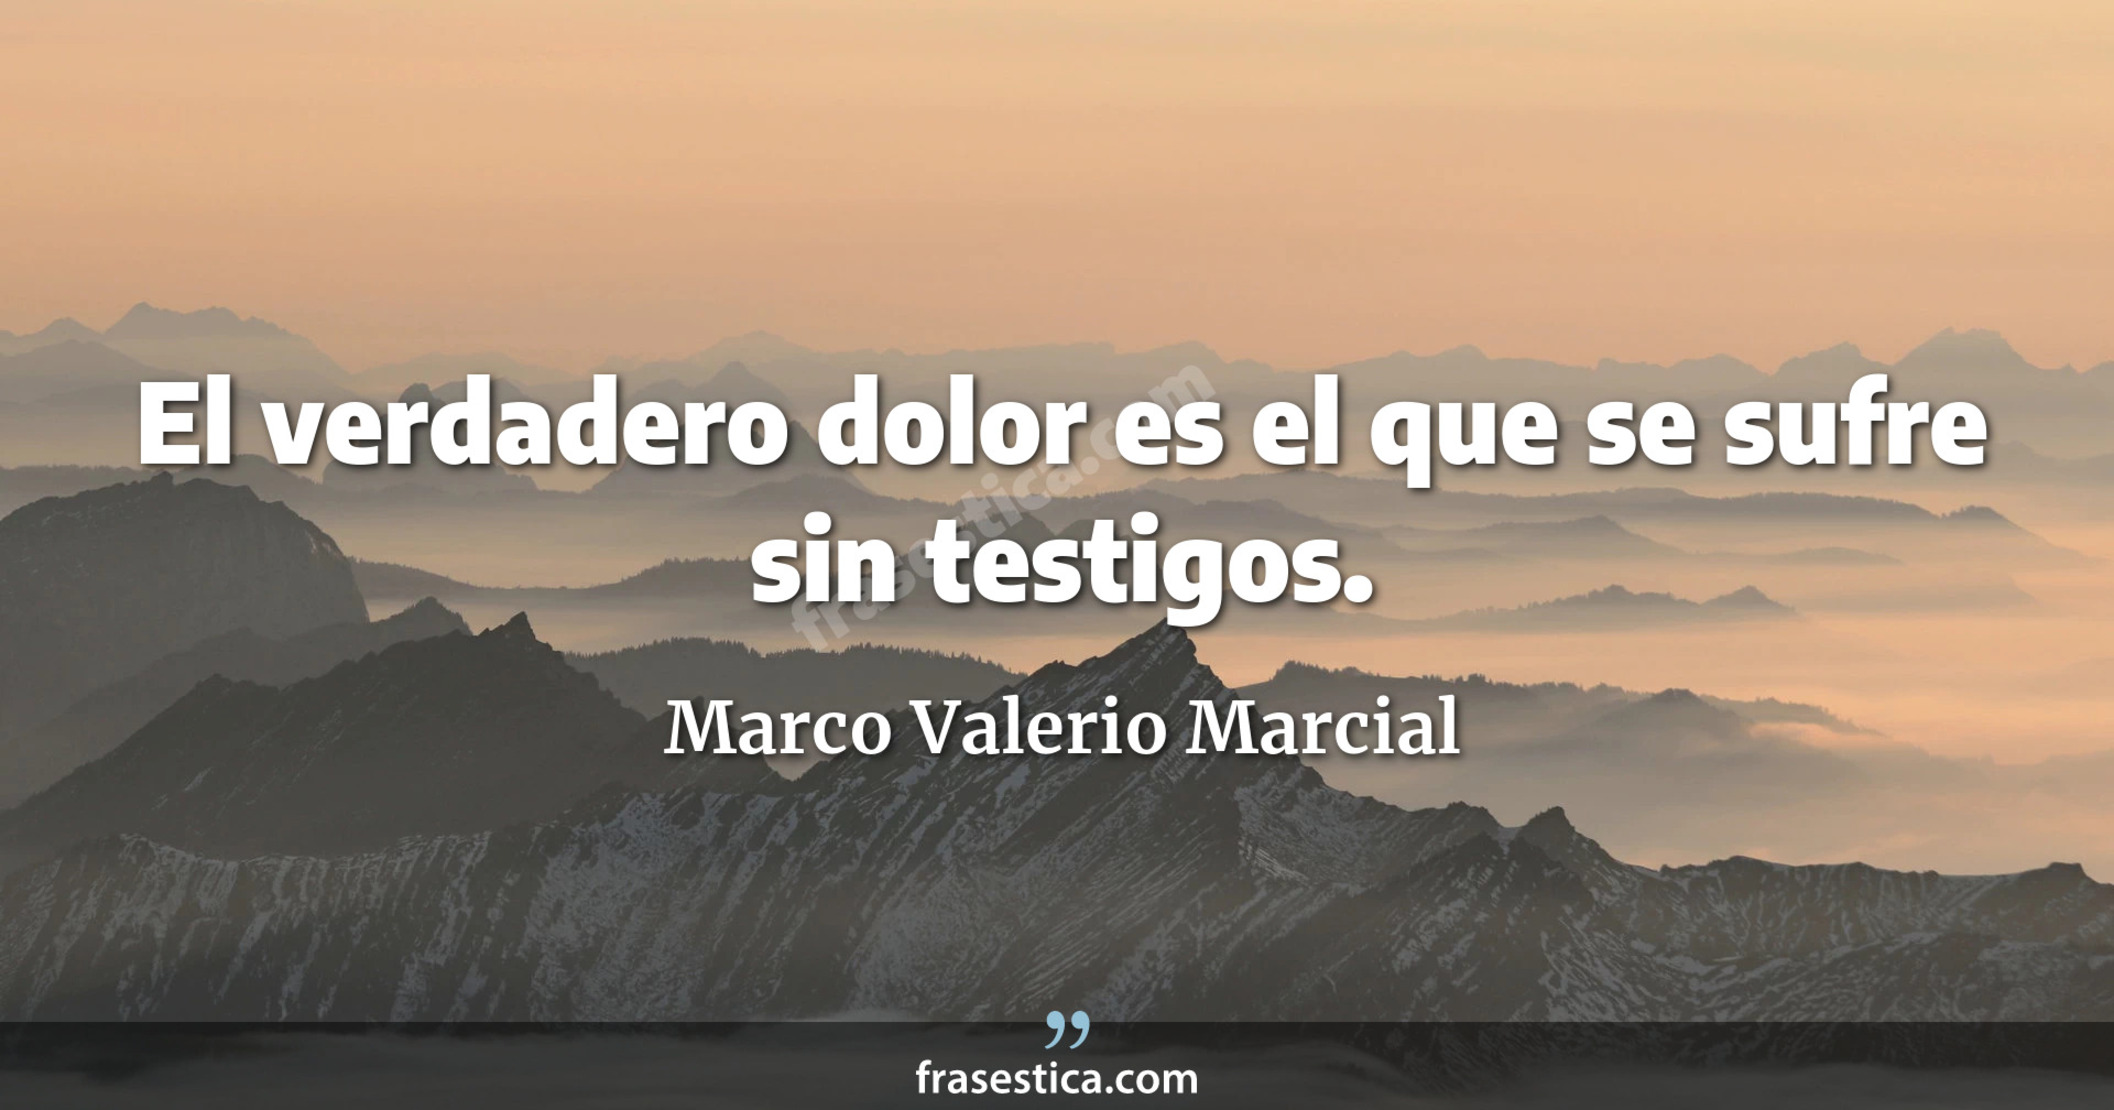 El verdadero dolor es el que se sufre sin testigos. - Marco Valerio Marcial